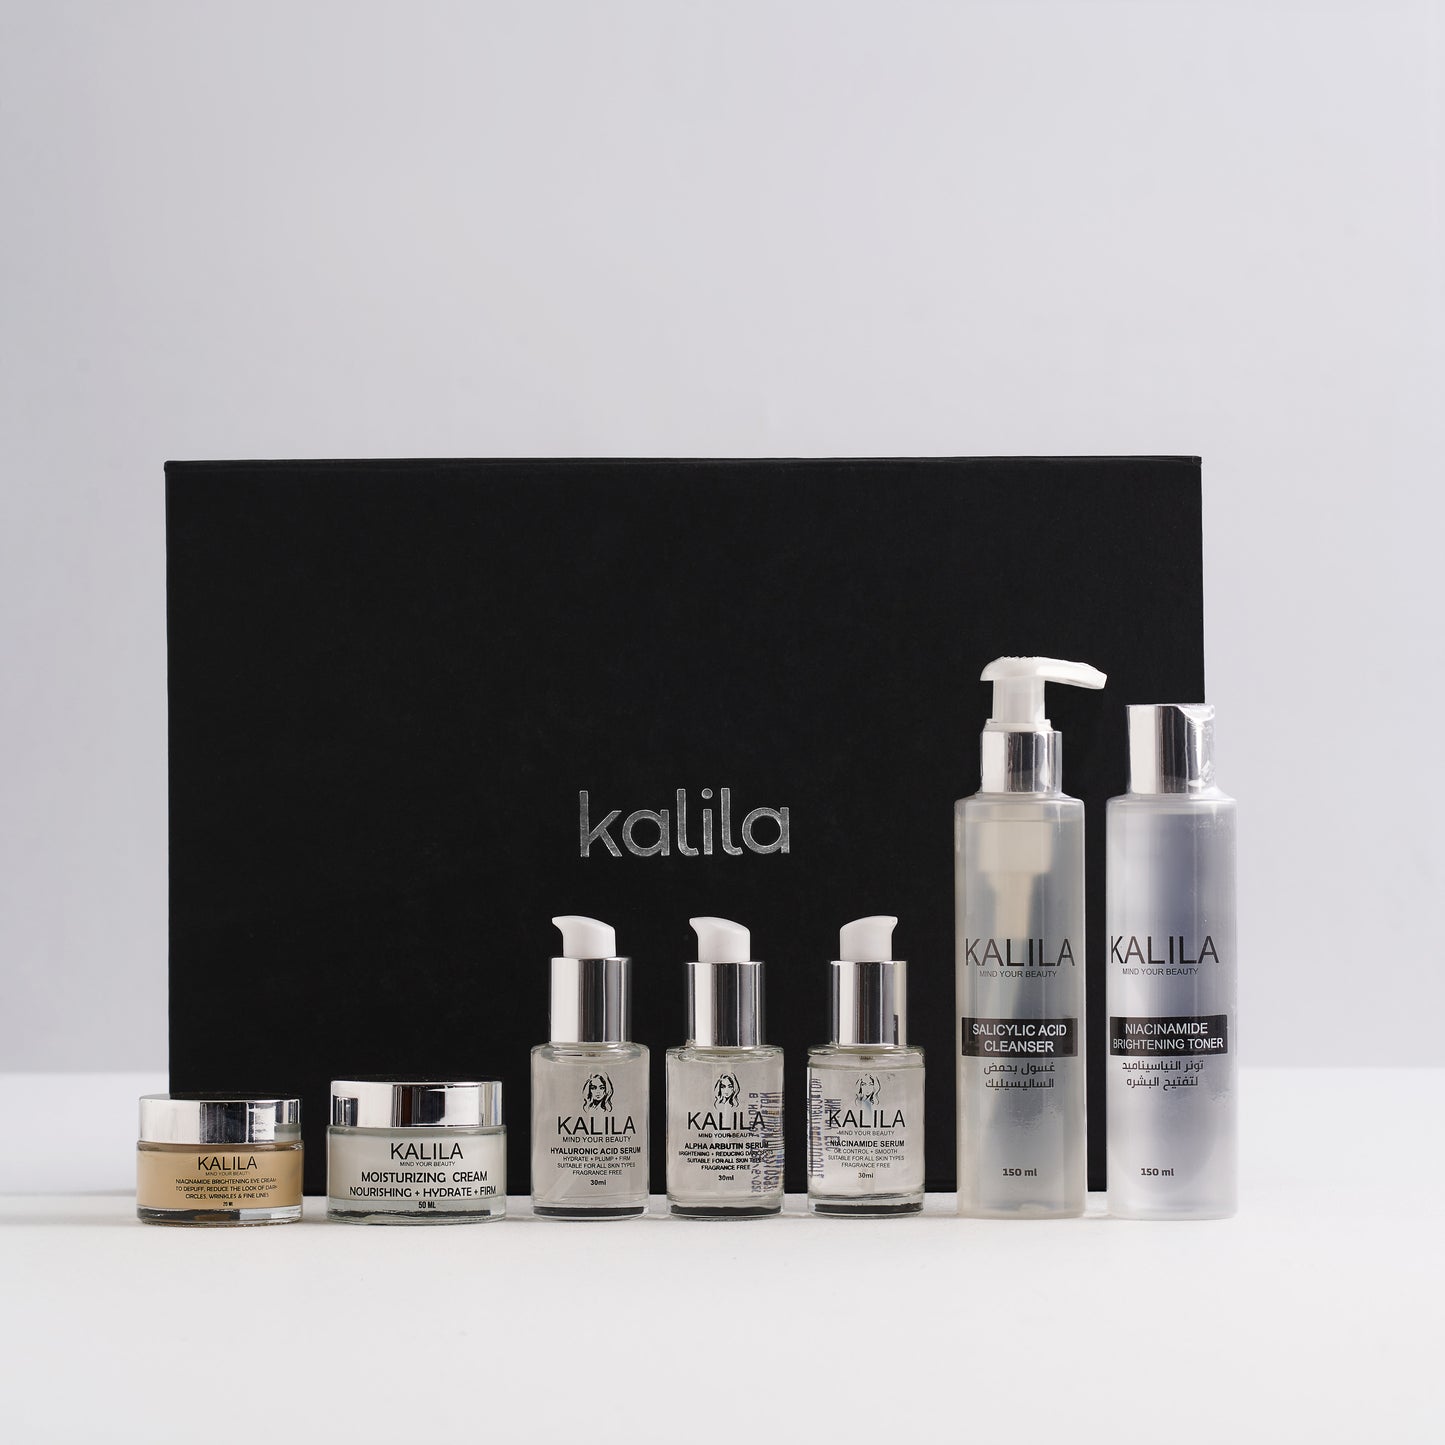 KALILA Skin Care Routine Full Set + Large Gift/Wrap 2